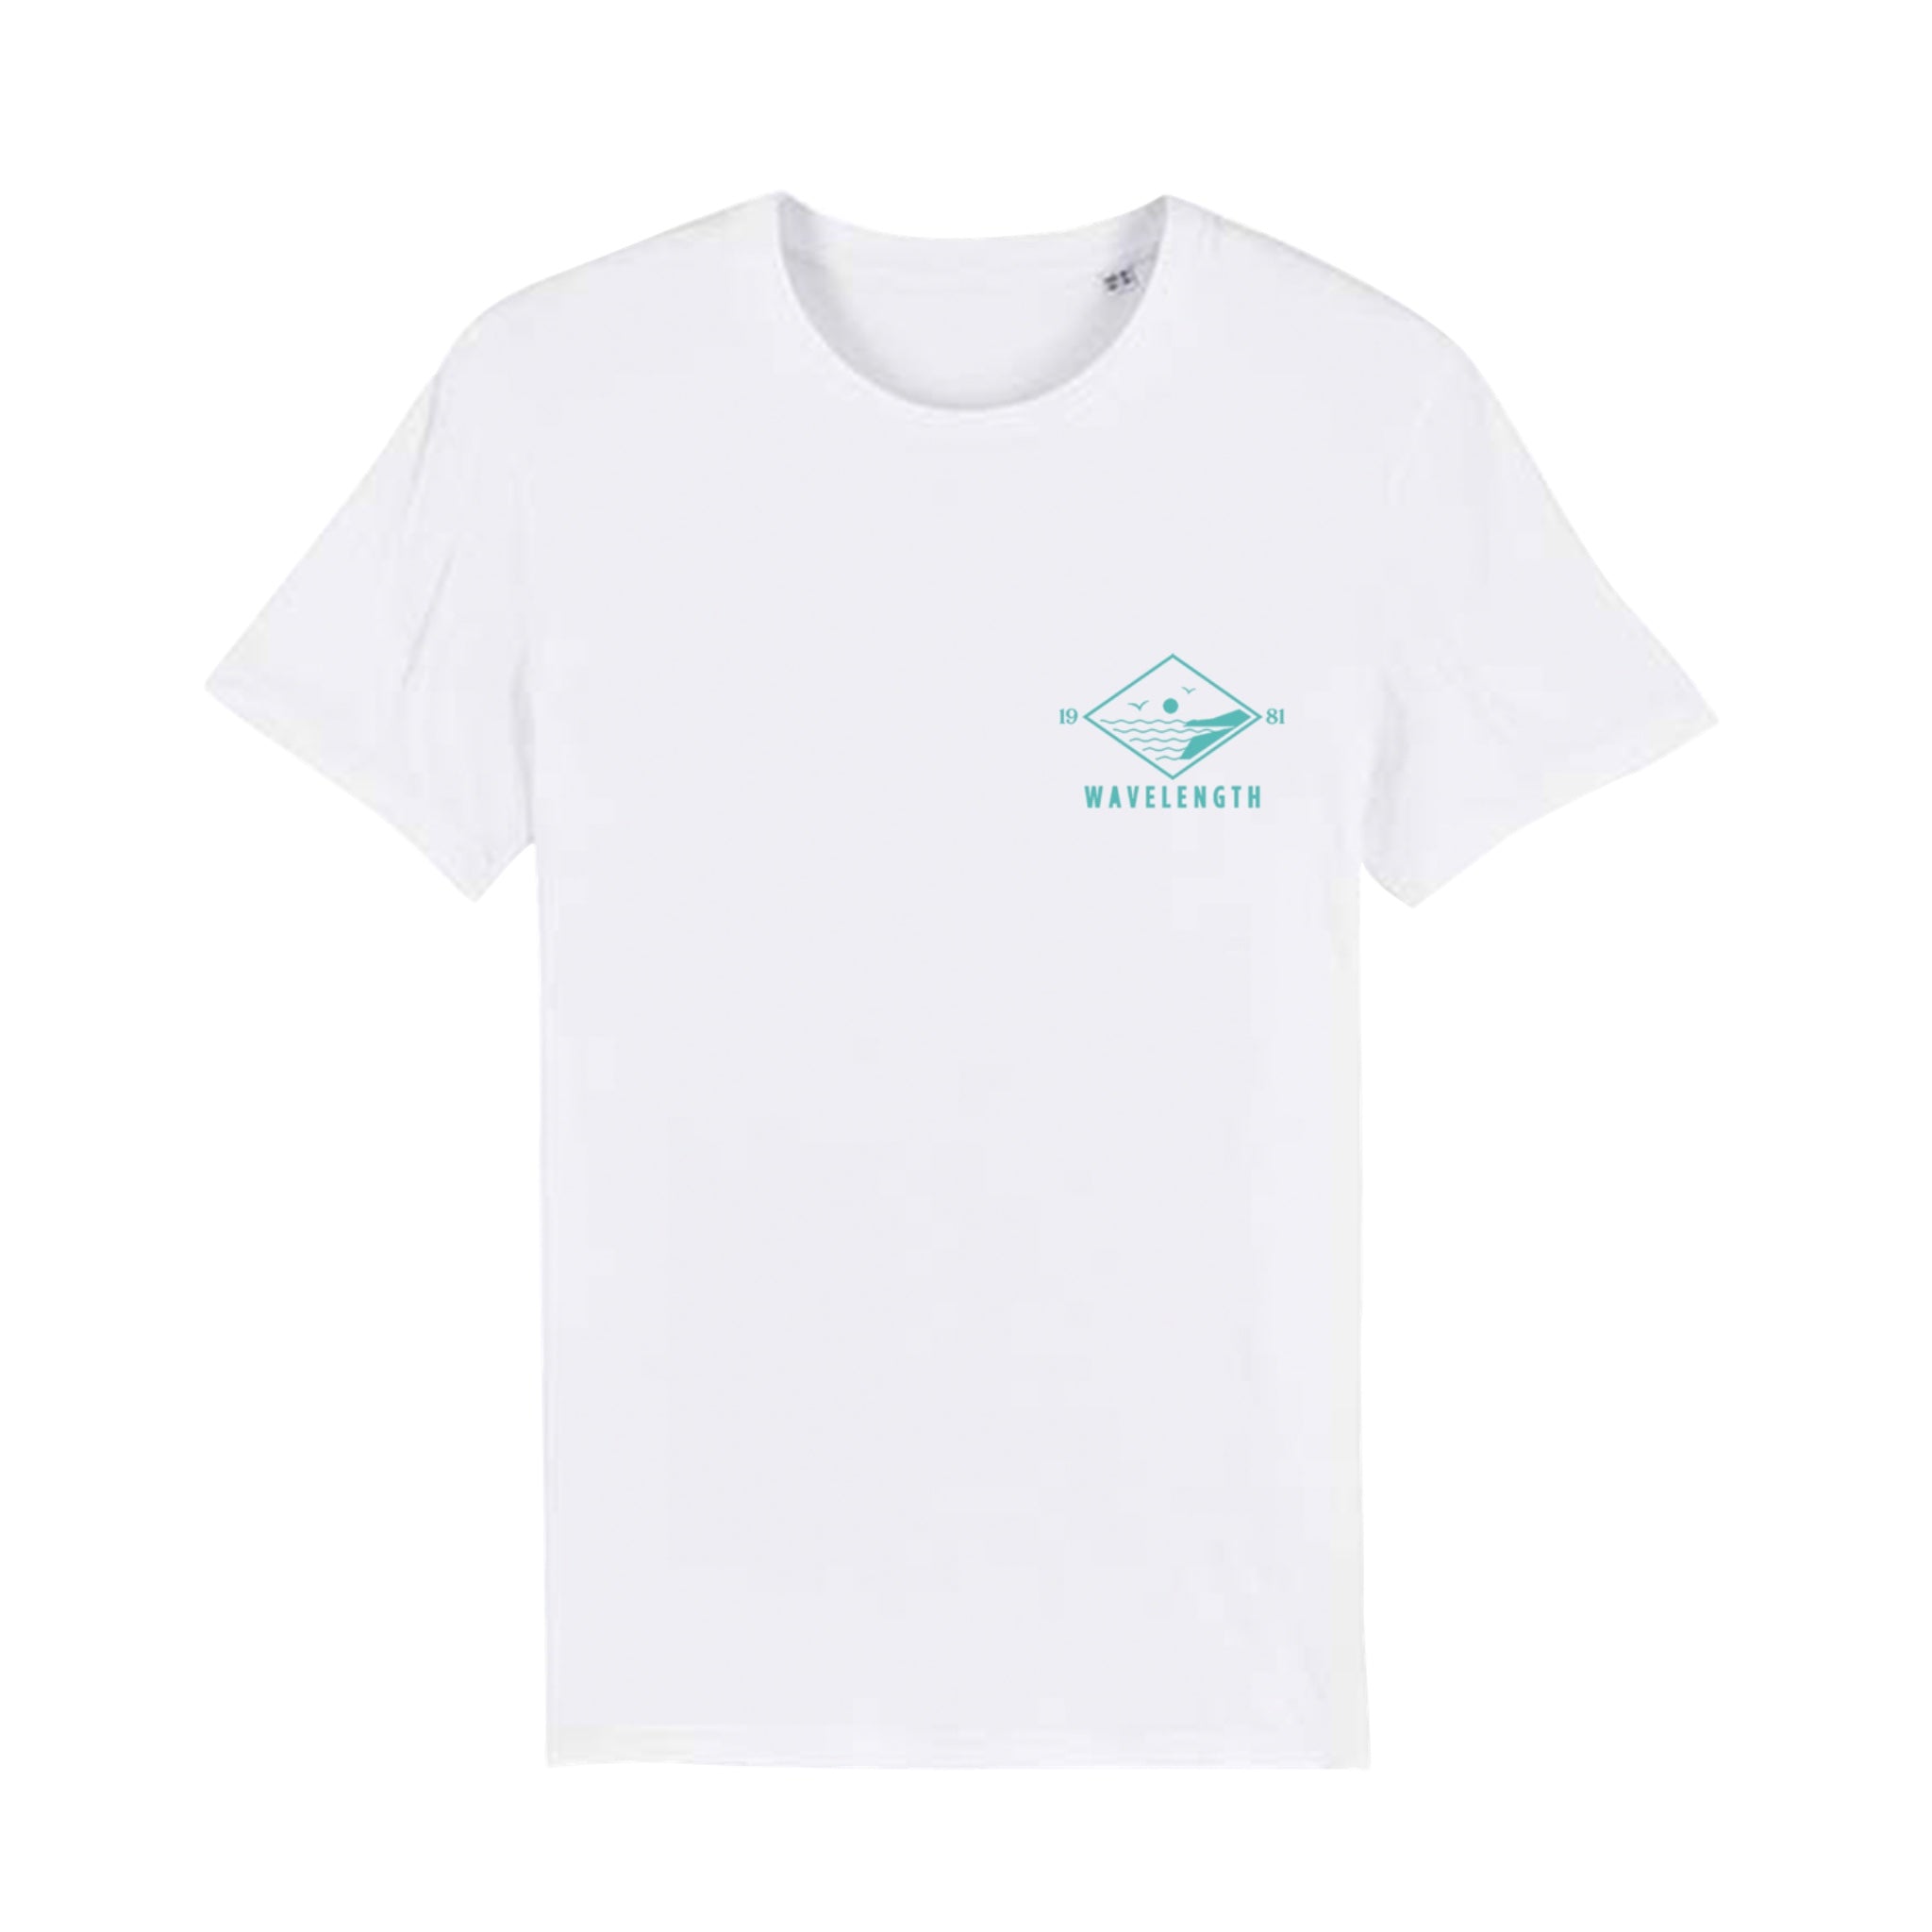 Wavelength Diamond Days T-Shirt - White